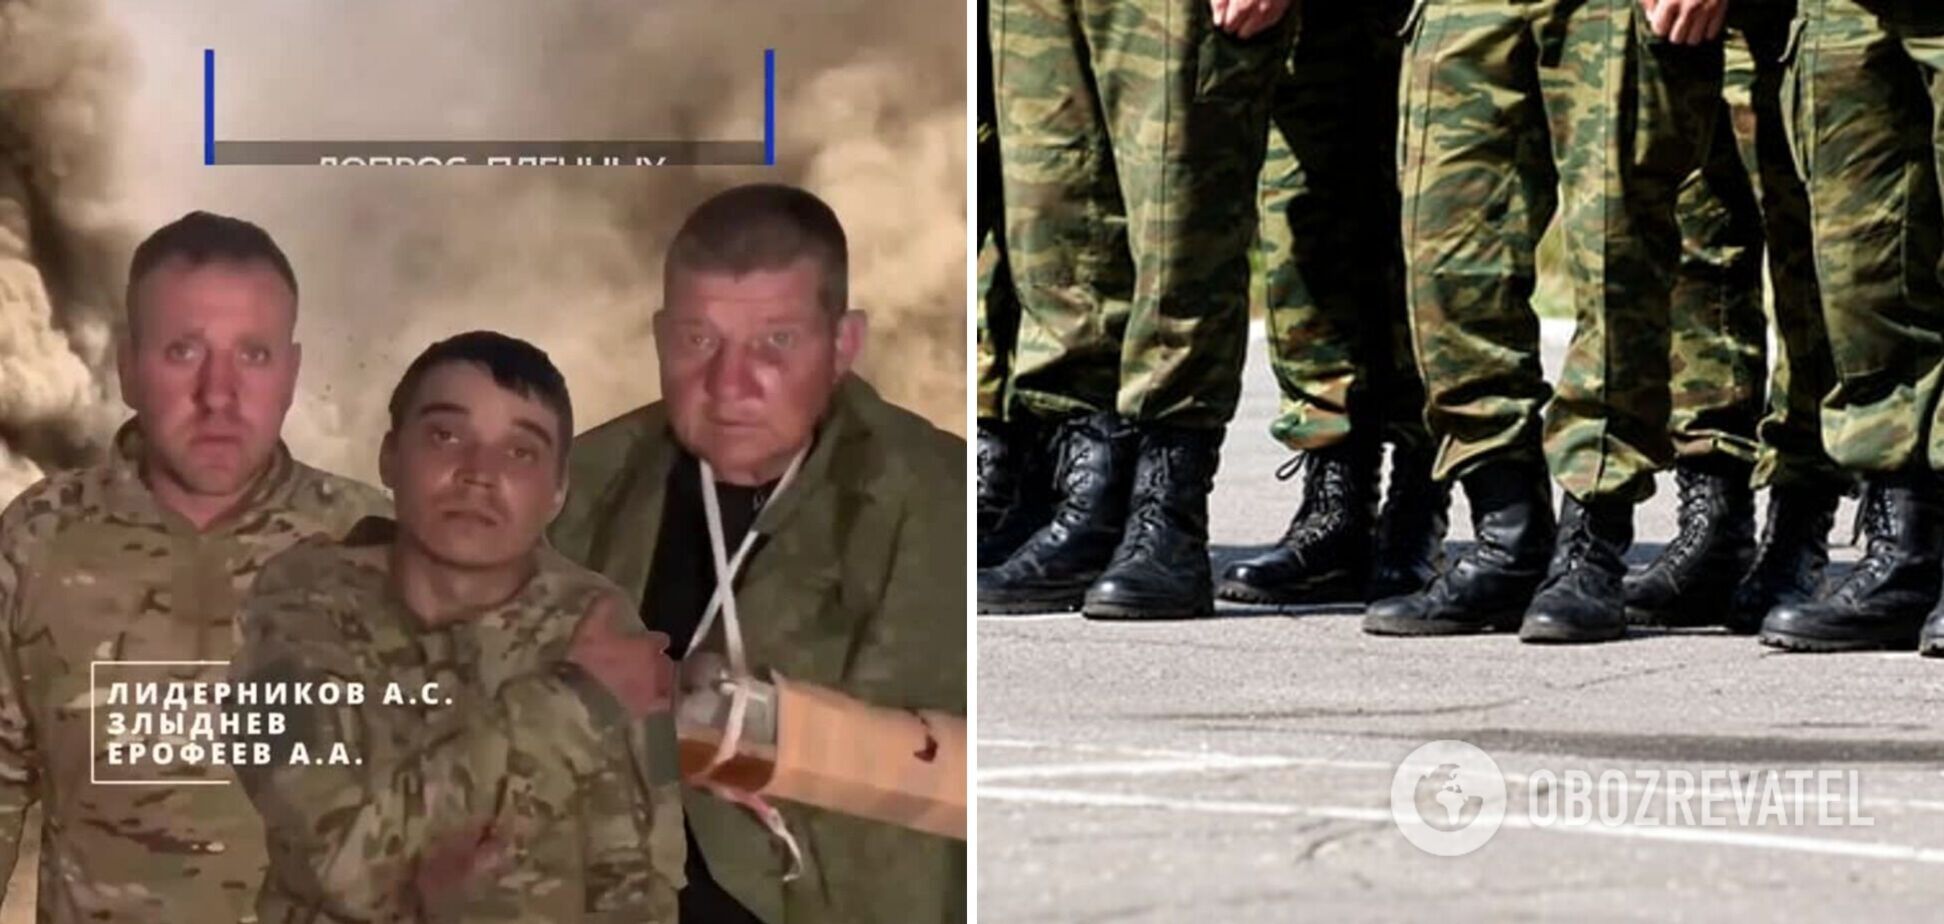 'Мы не хотим такой войны': пленные российские 'мобики' жалуются, что их 'шлют на мясо'. Видео